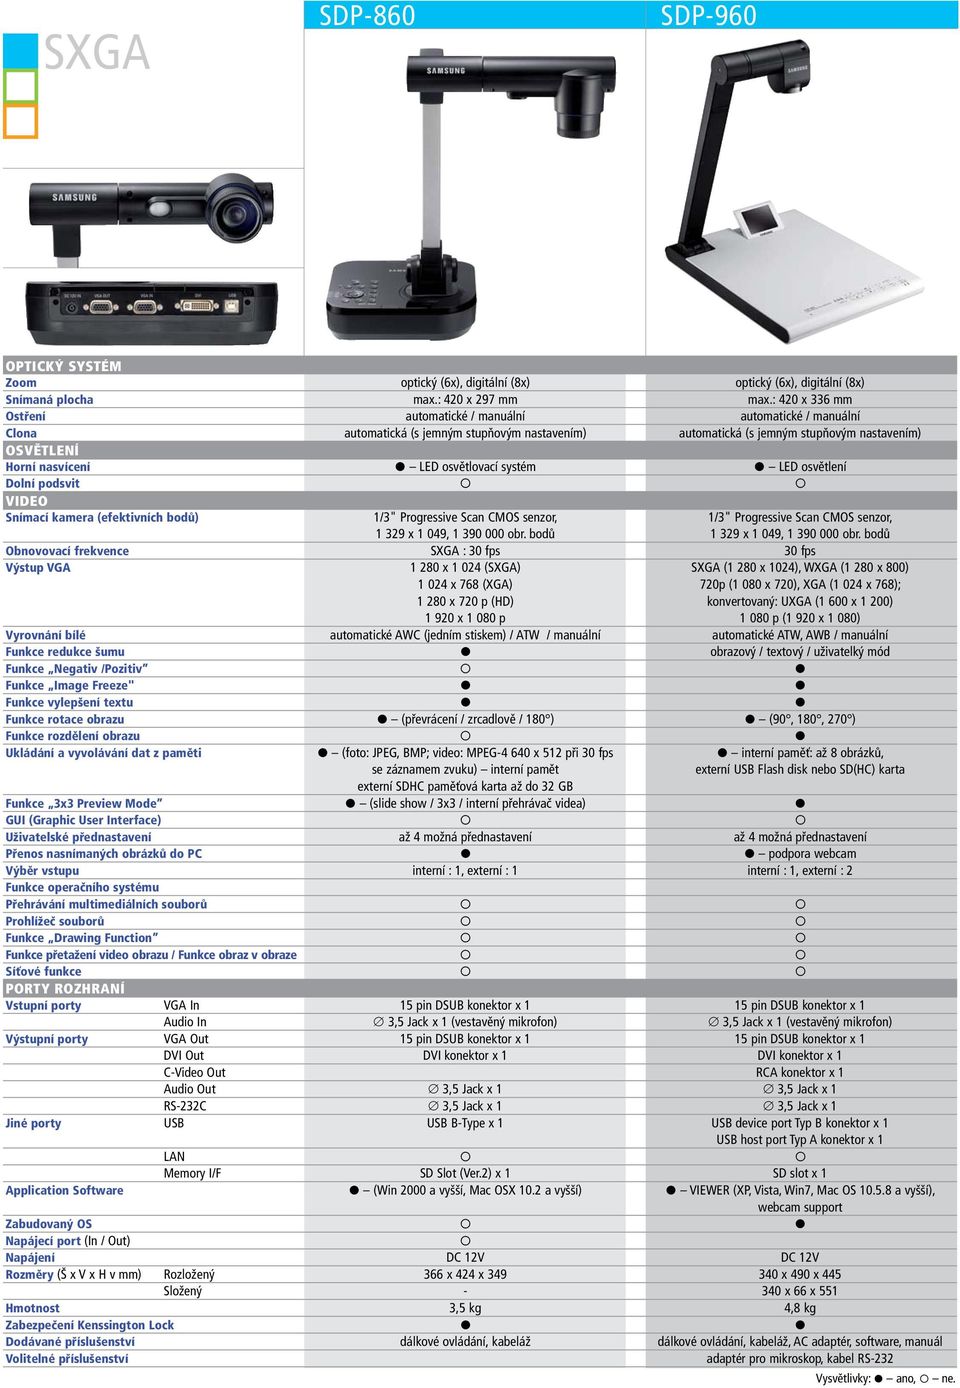 systém LED osvětlení Dolní podsvit Snímací kamera (efektivních bodů) 1/3" Progressive Scan CMOS senzor, 1/3" Progressive Scan CMOS senzor, 1 329 x 1 049, 1 390 000 obr.